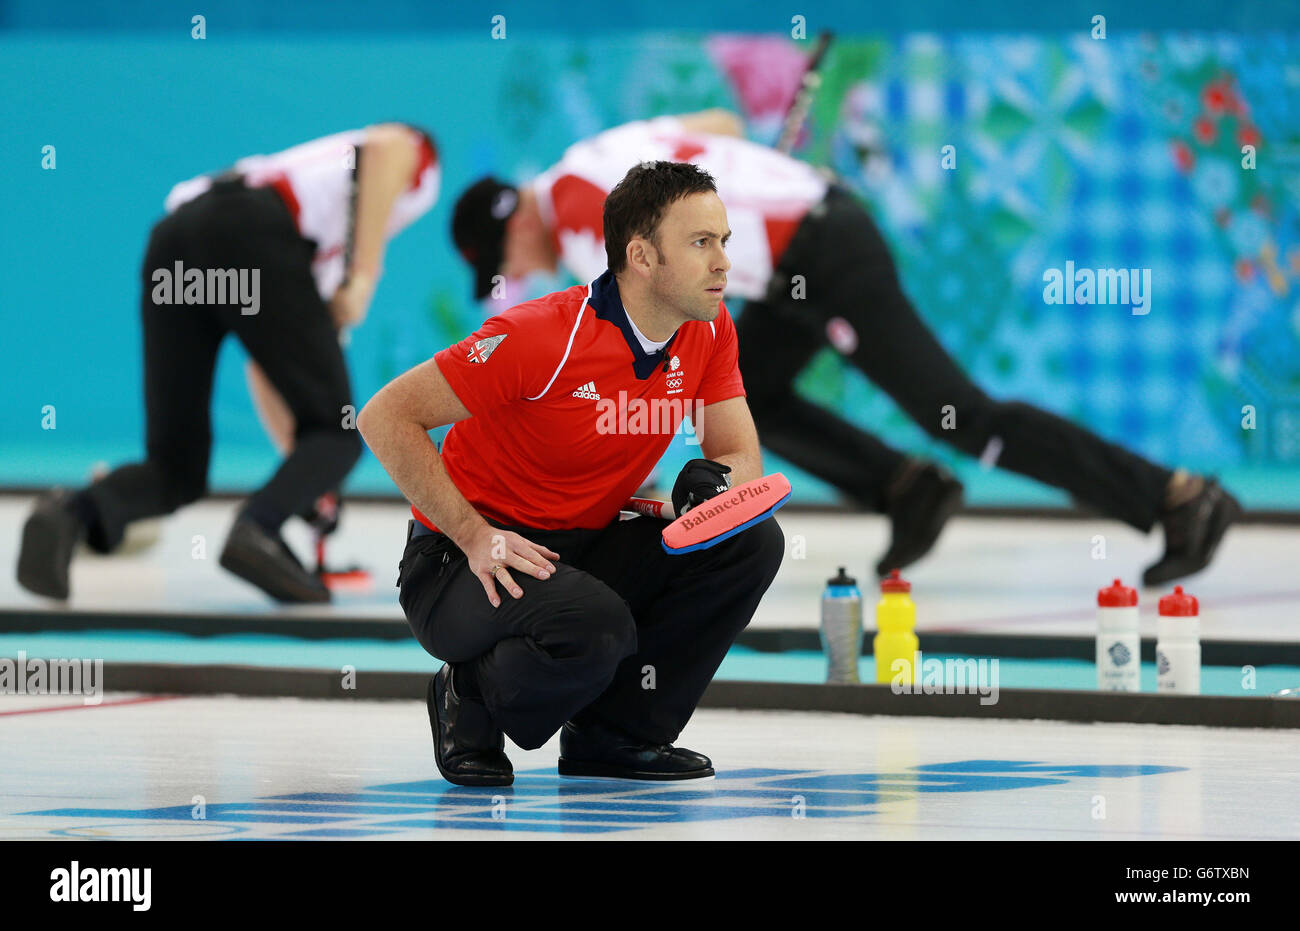 Jeux olympiques d'hiver de Sotchi - jour 9.David Murdoch en Grande-Bretagne lors de la compétition de curling des hommes lors des Jeux Olympiques de Sotchi 2014 à Sotchi, Russie. Banque D'Images